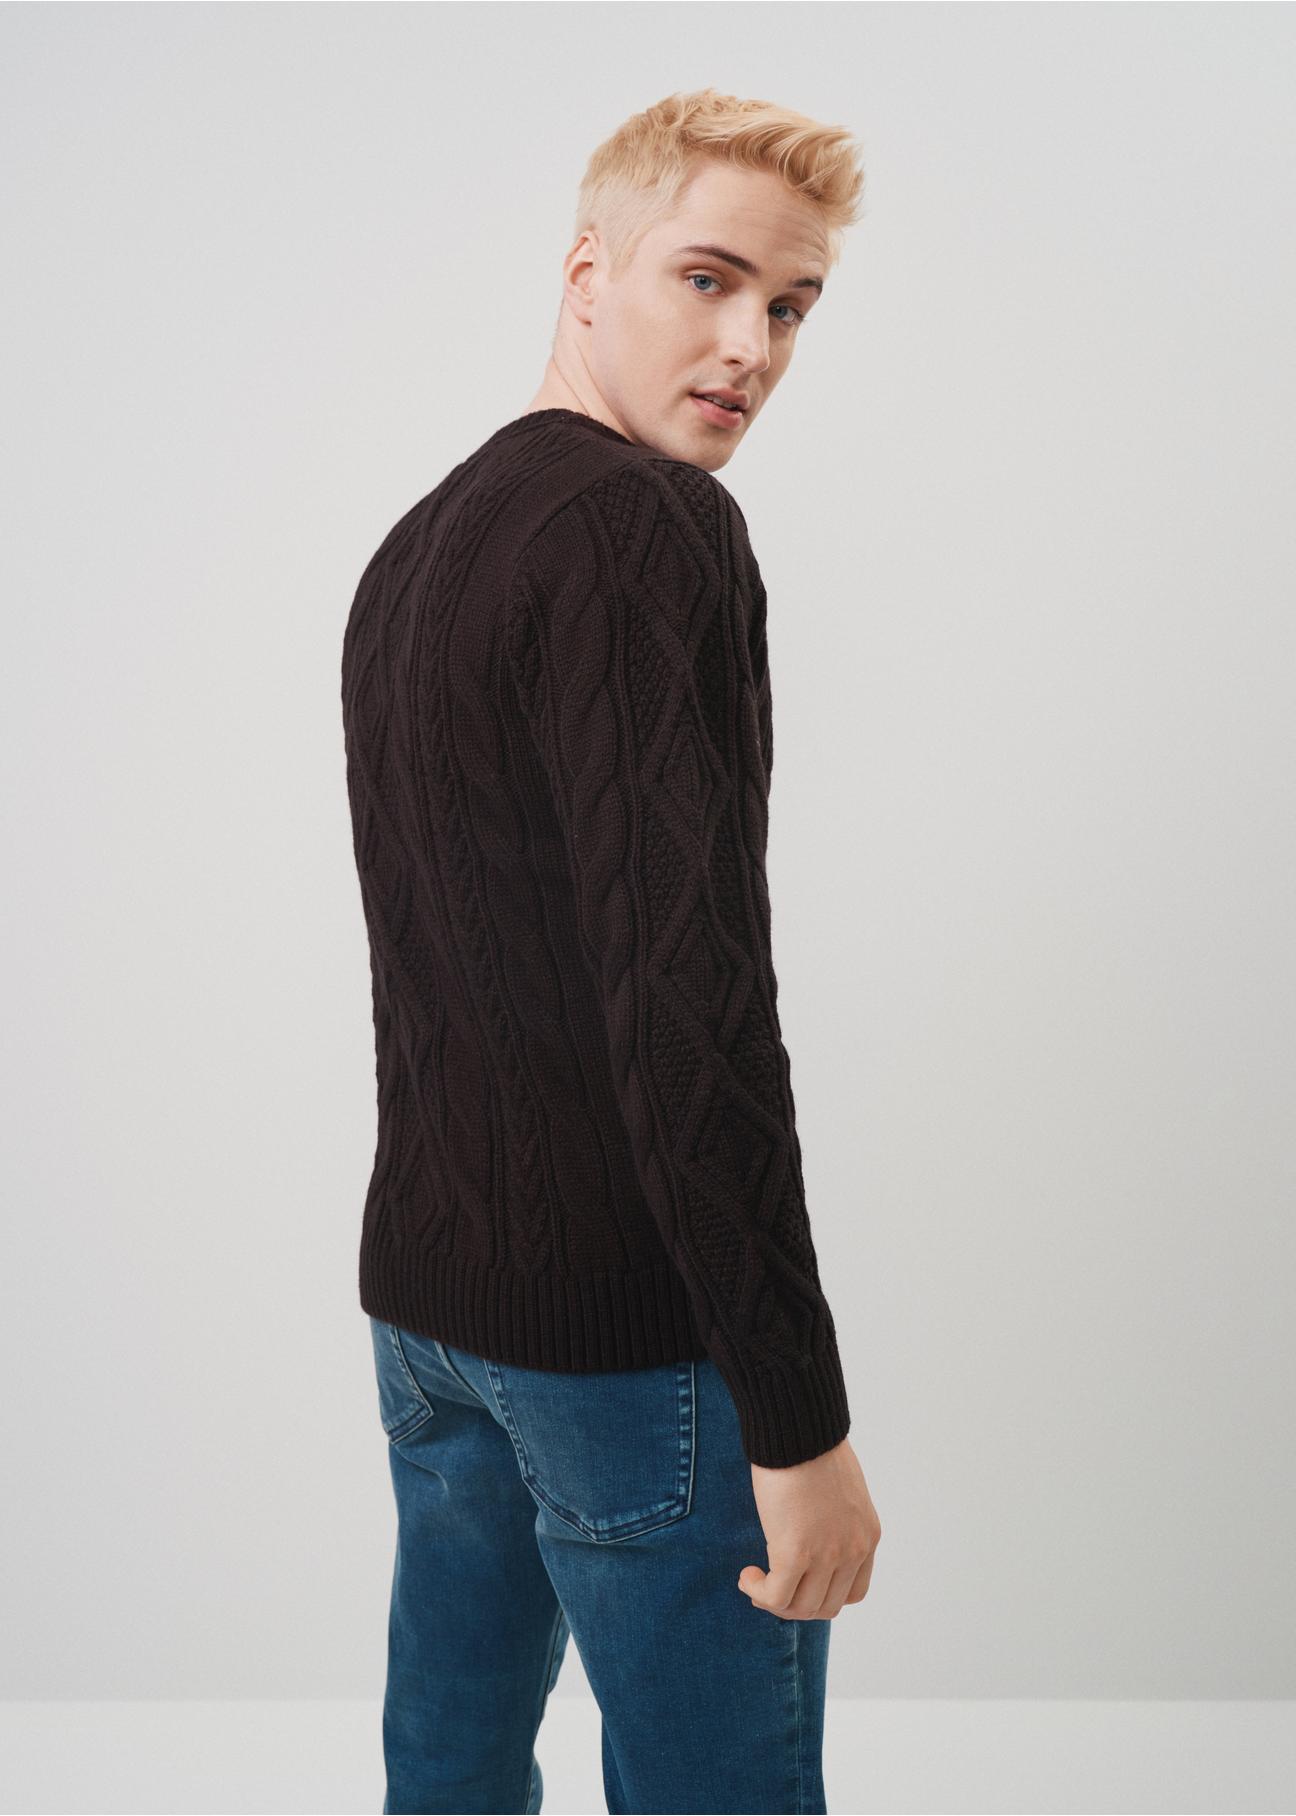 Czarny sweter męski SWEMT-0141-99(Z23)